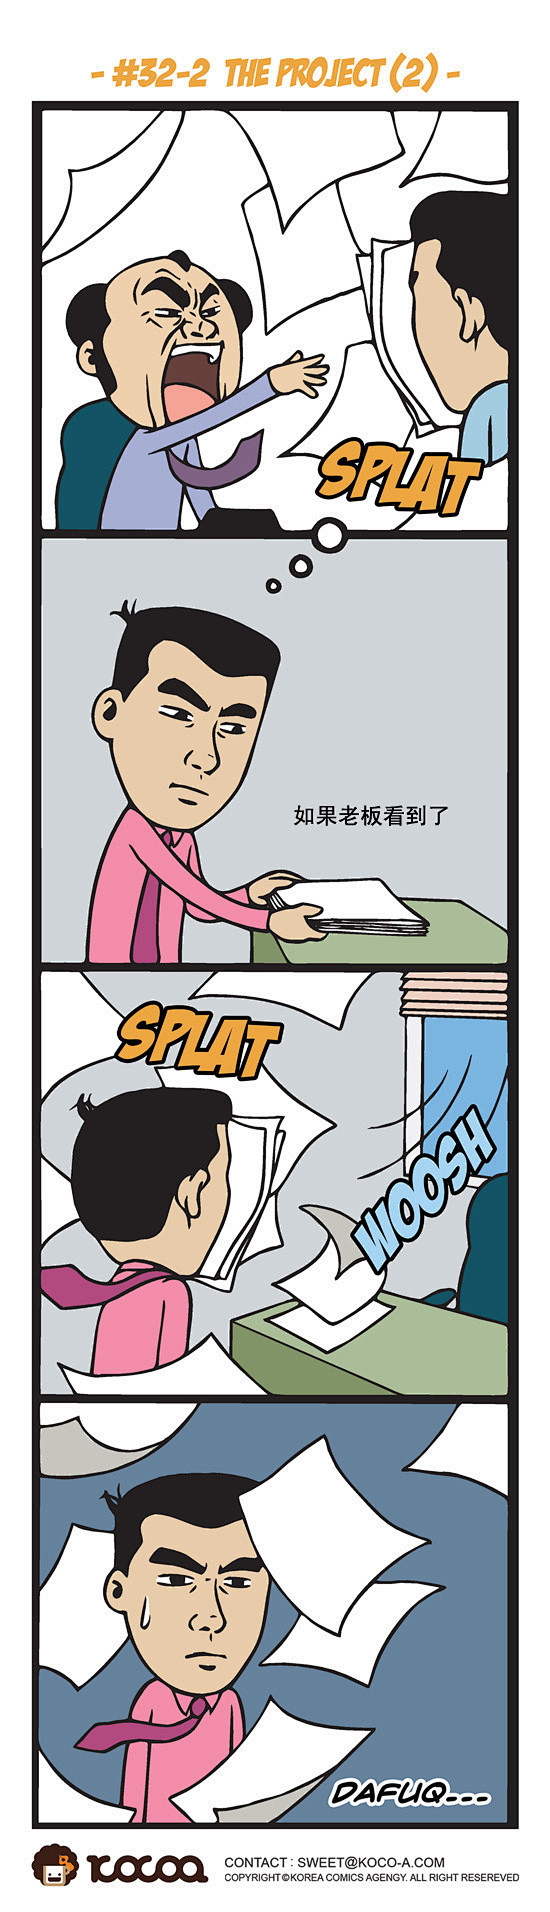 韩国猥琐漫画